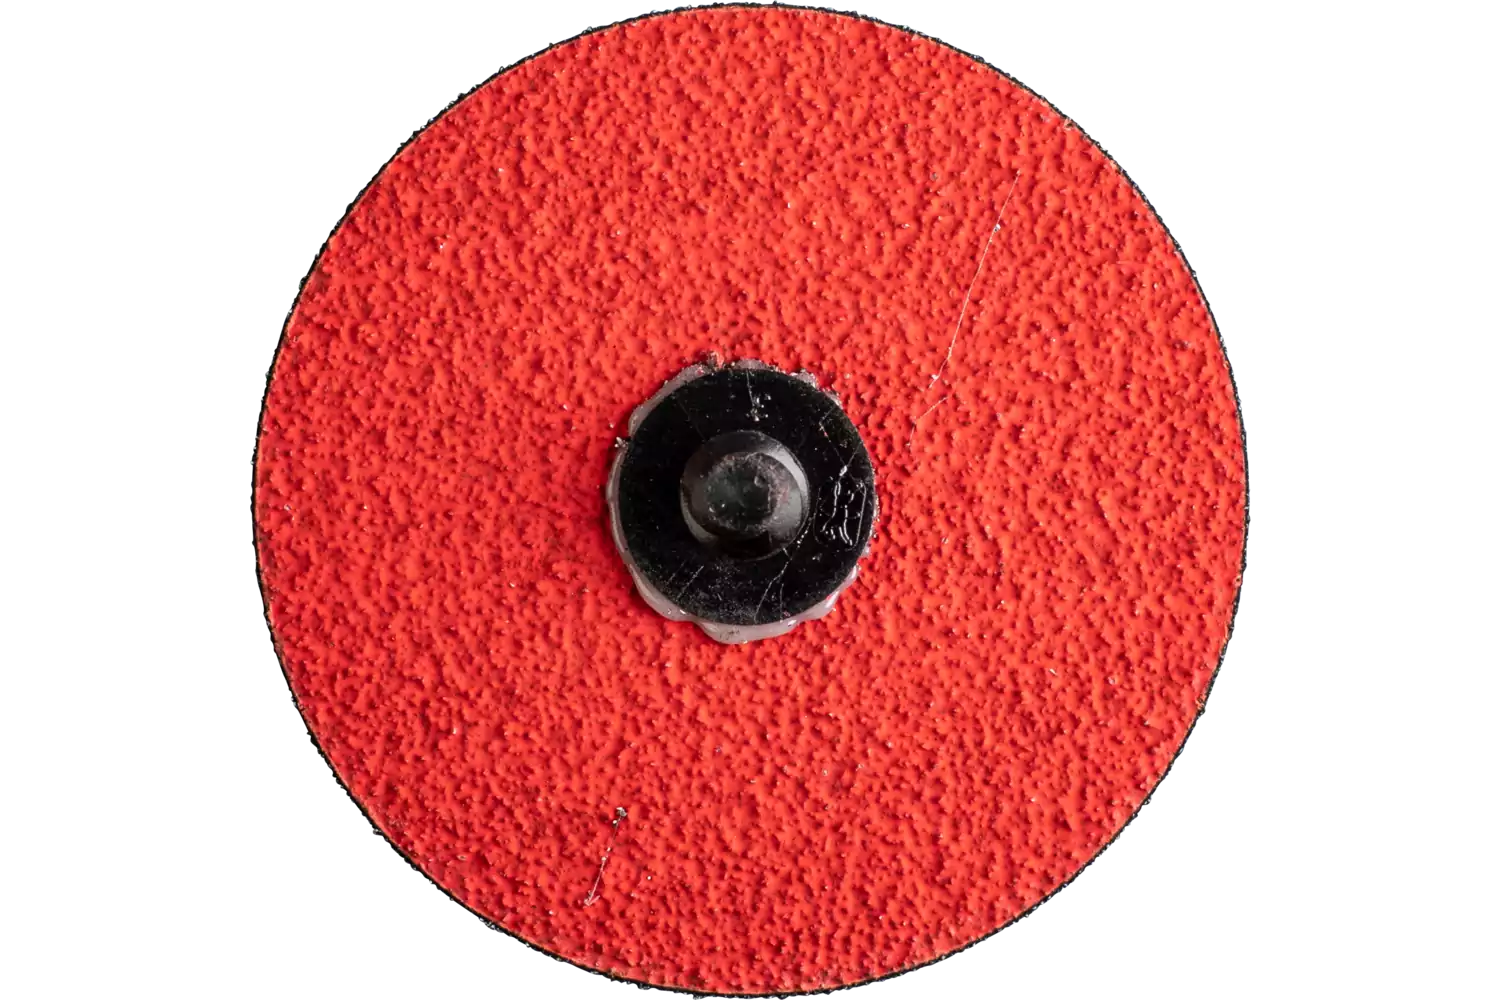 Minidisco in fibra granulo ceramico COMBIDISC CDFR Ø 75 mm CO-COOL50 per smerigliatura posteriore 2